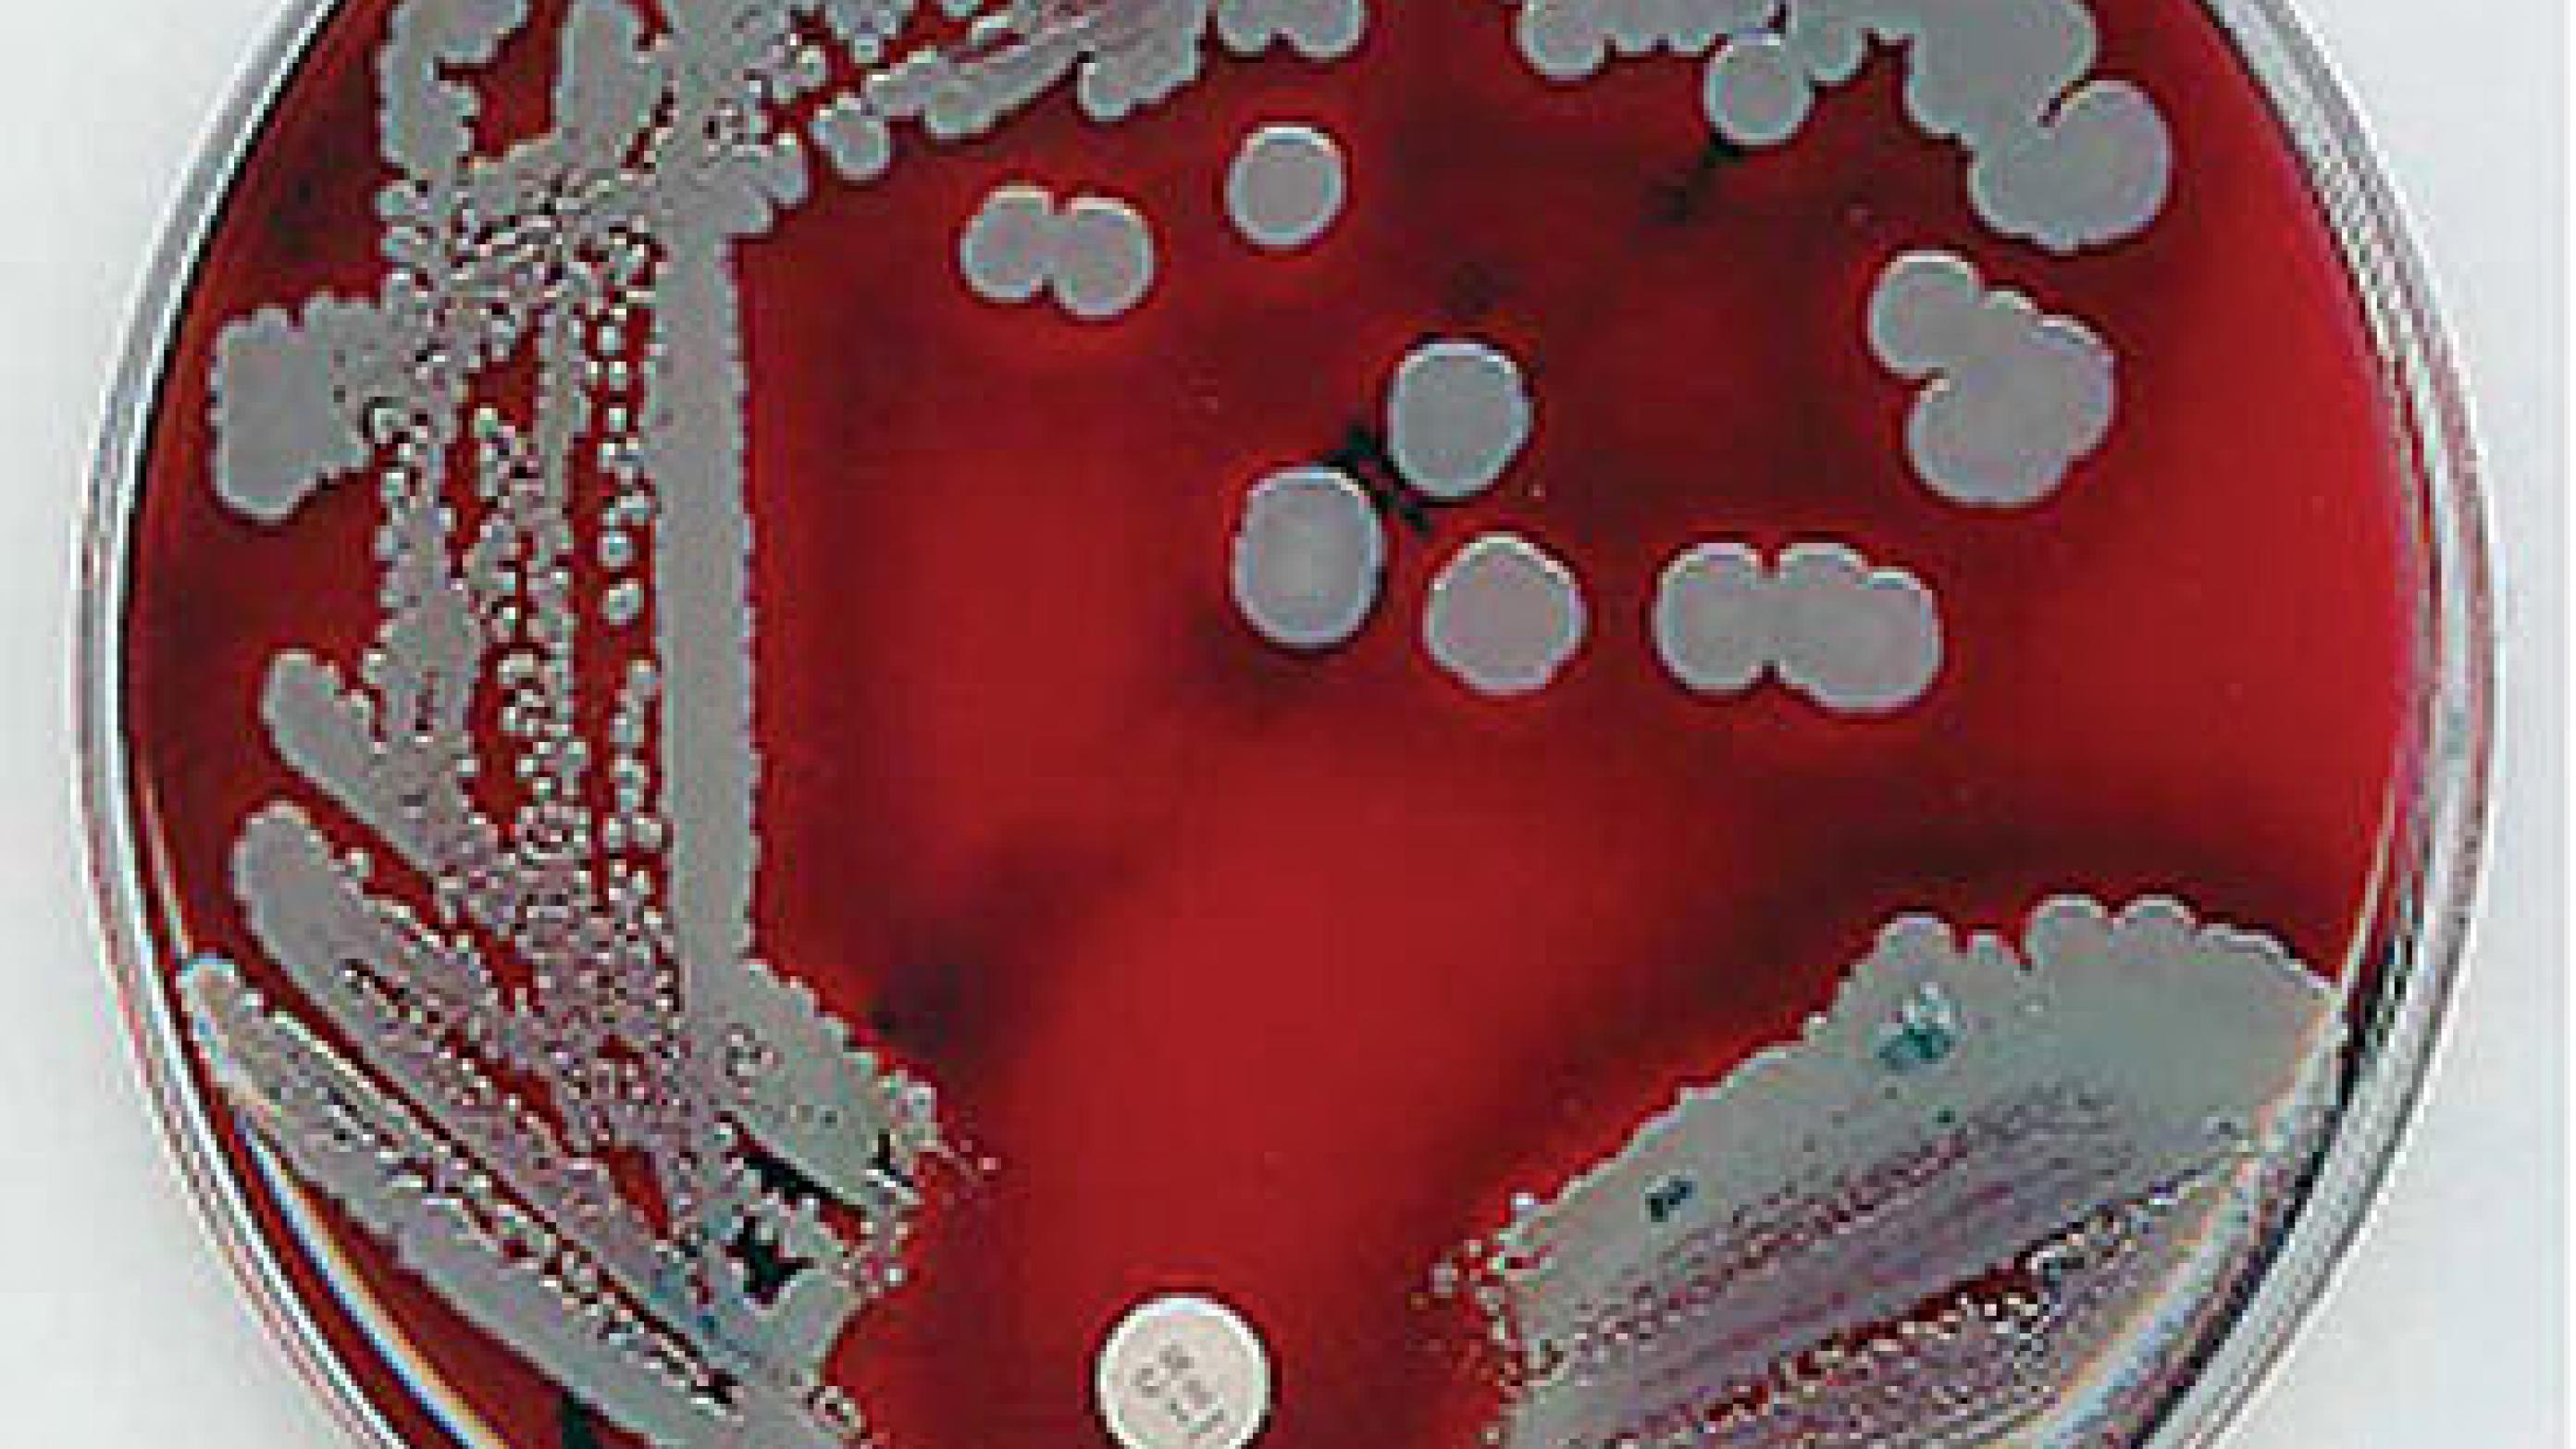 Staphylococcus aureus på blod­agar med intakt følsomhed for gentamicin (fra www.flickr.com/photos/estherase/ 34165928/).